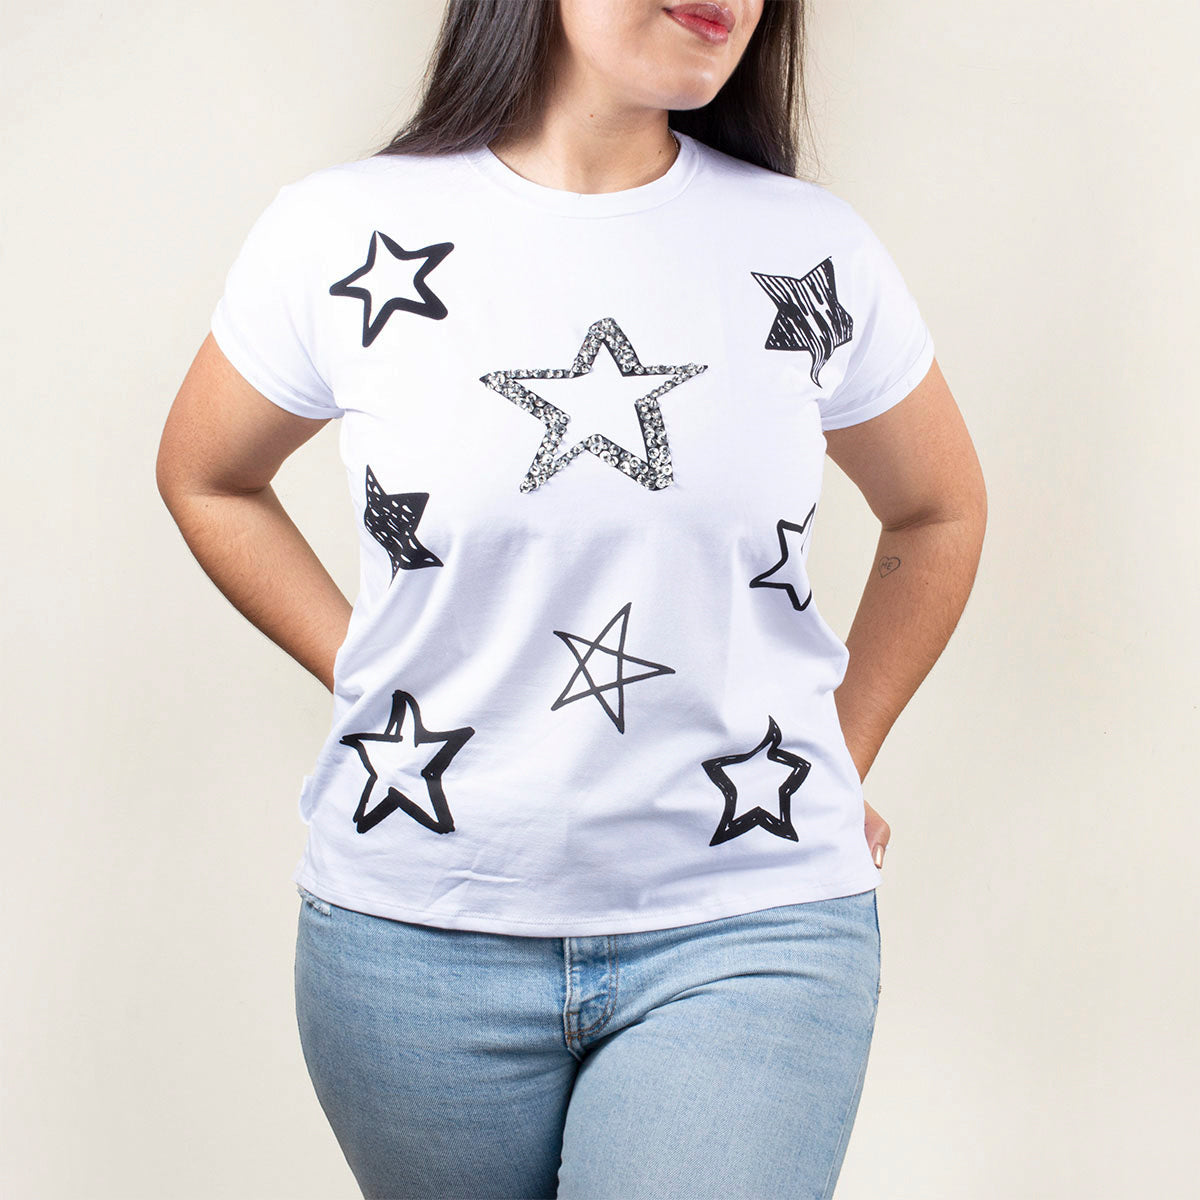 Camiseta básica color blanco con estampado de estrellas